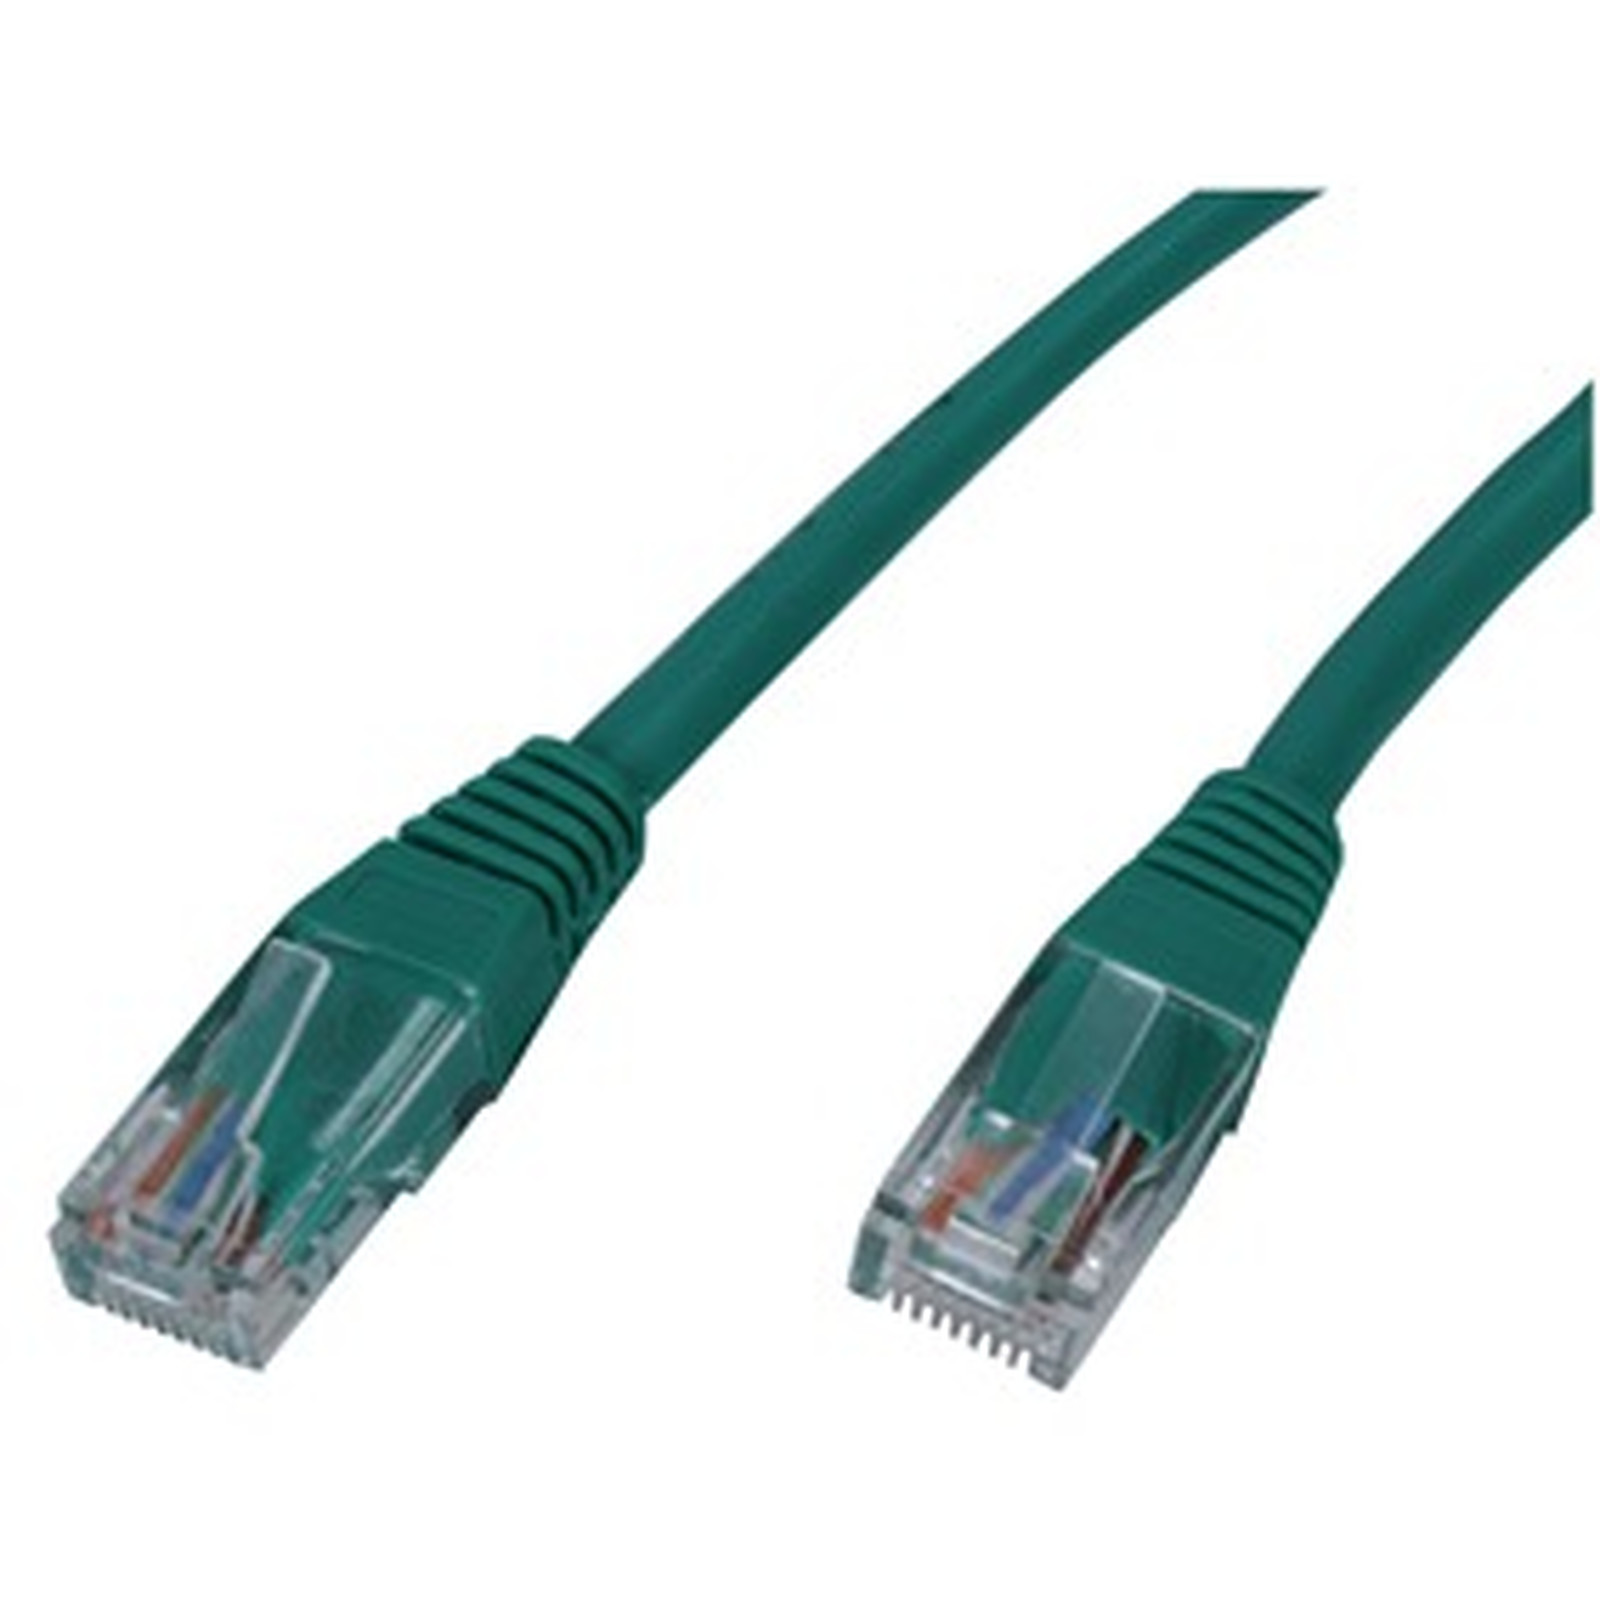 Cable RJ45 categorie 5e U/UTP 5 m (Vert) - Cable RJ45 Generique